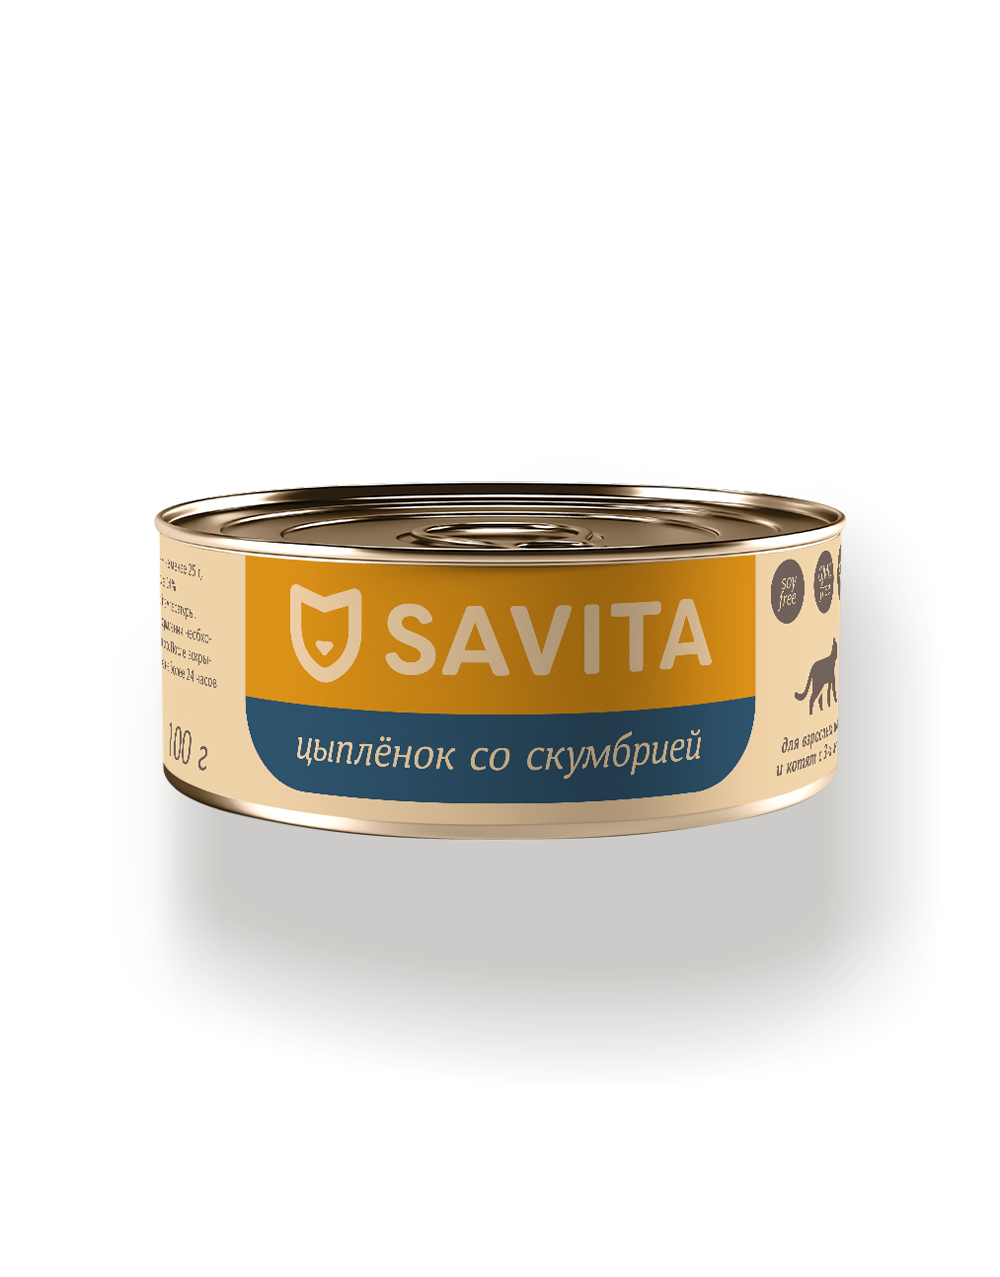 Savita 100 г - консервы для кошек и котят с цыплёнком и скумбрией